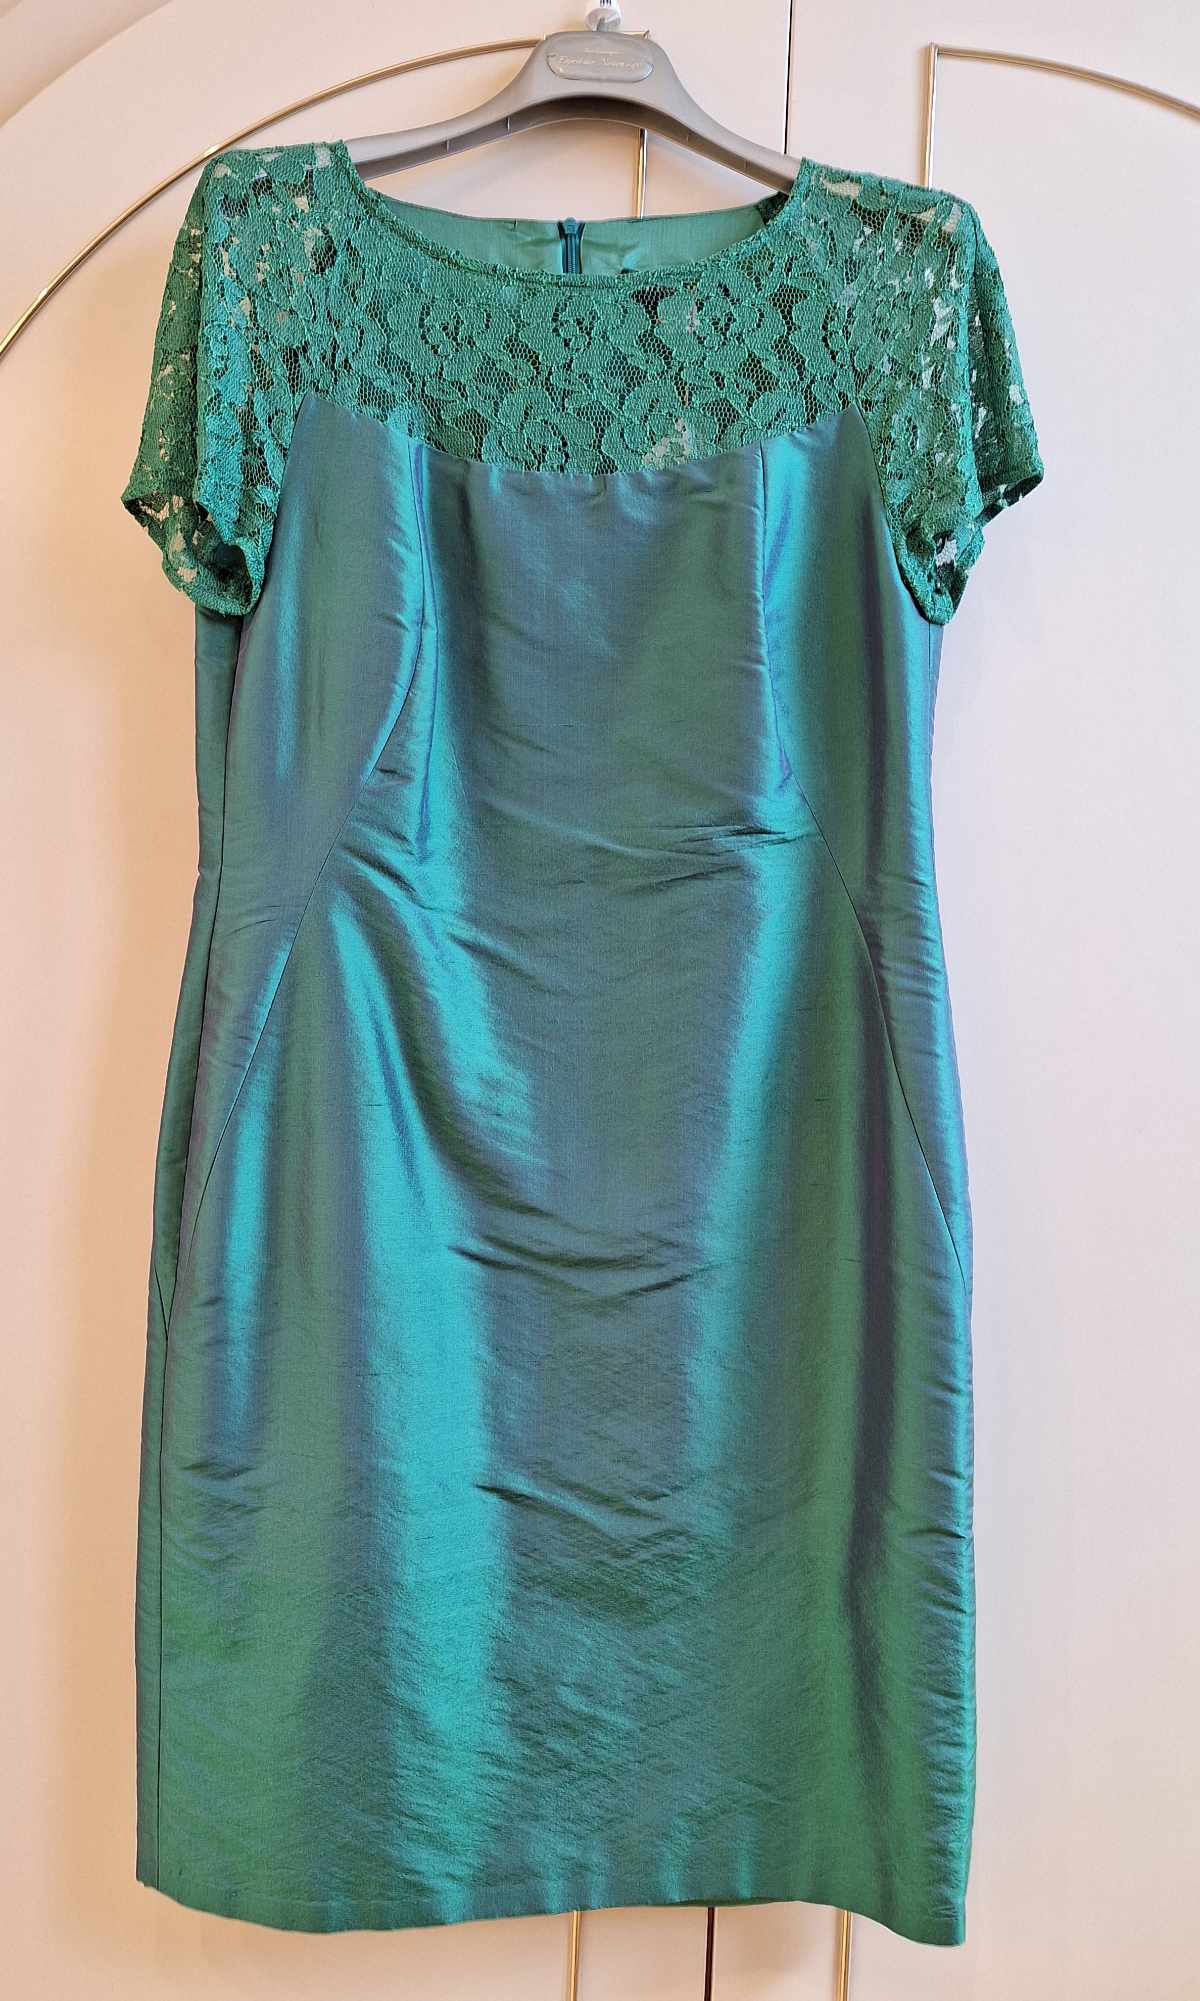 Patrizia Dini Kleid, in grün, Größe 38, aus Seide mit Spitzeneinsatz, Frontalansicht.